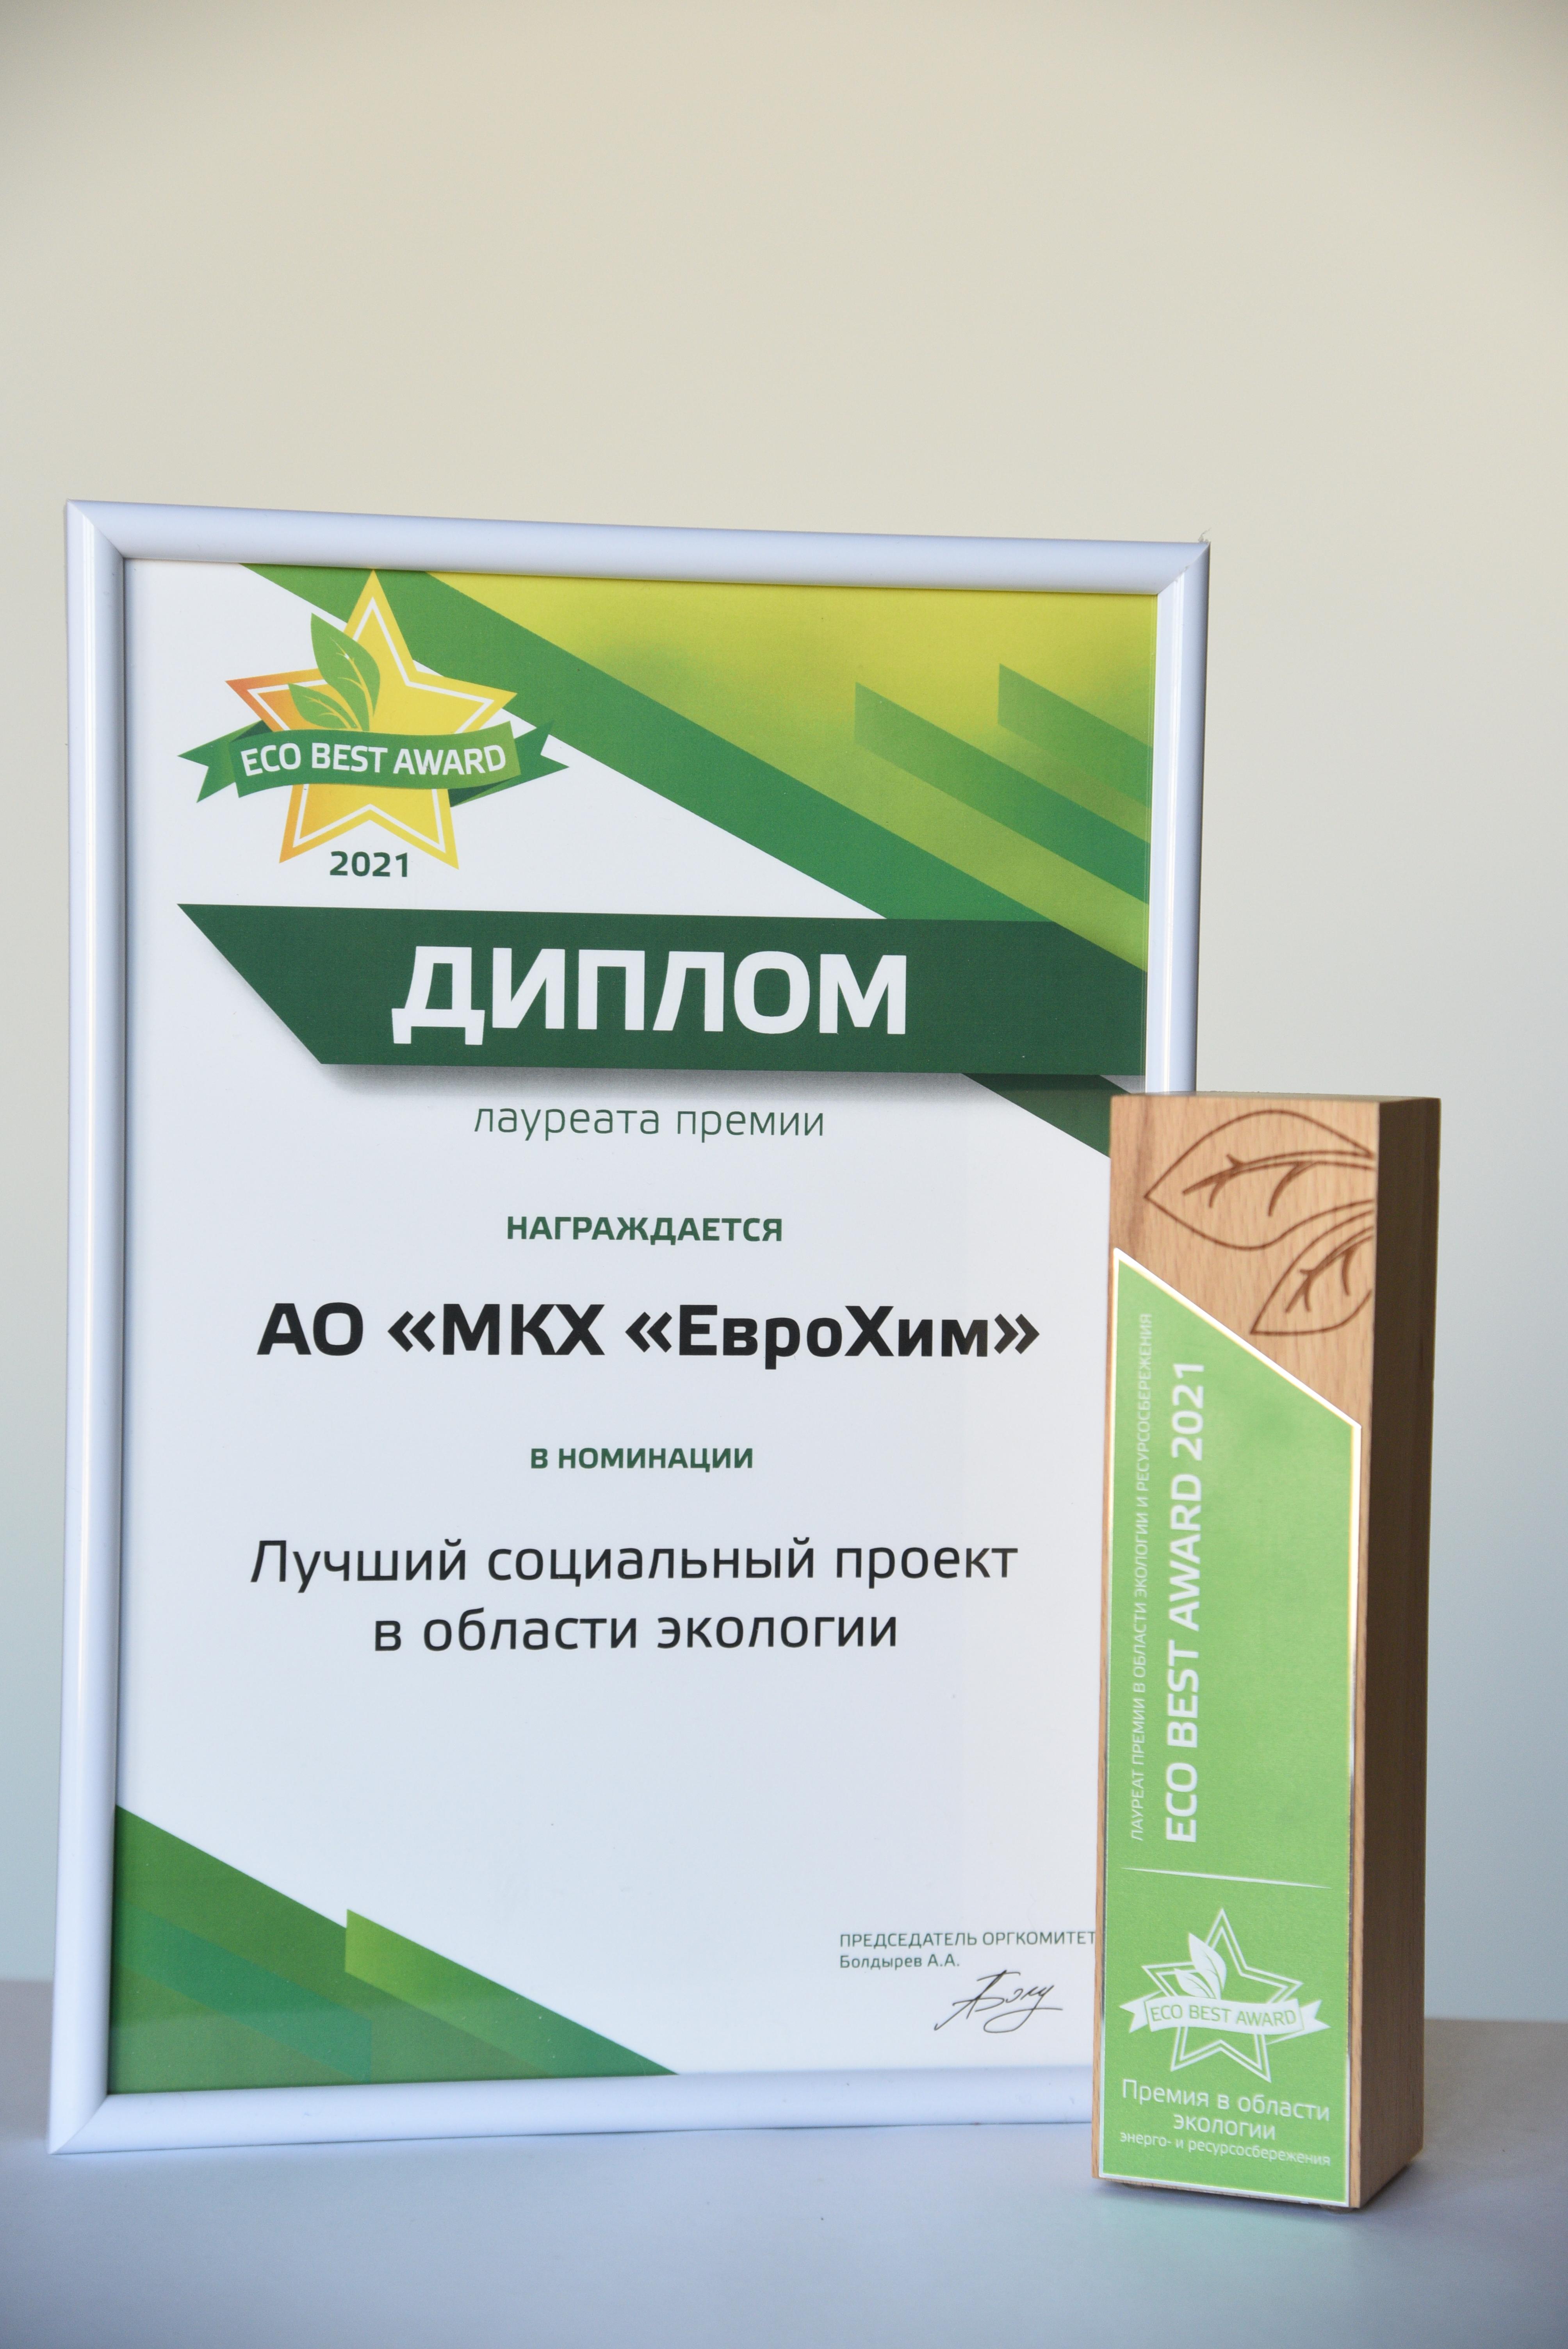 Социальный проект компании «ЕвроХим» признан лучшим на конкурсе ECO BEST AWARD